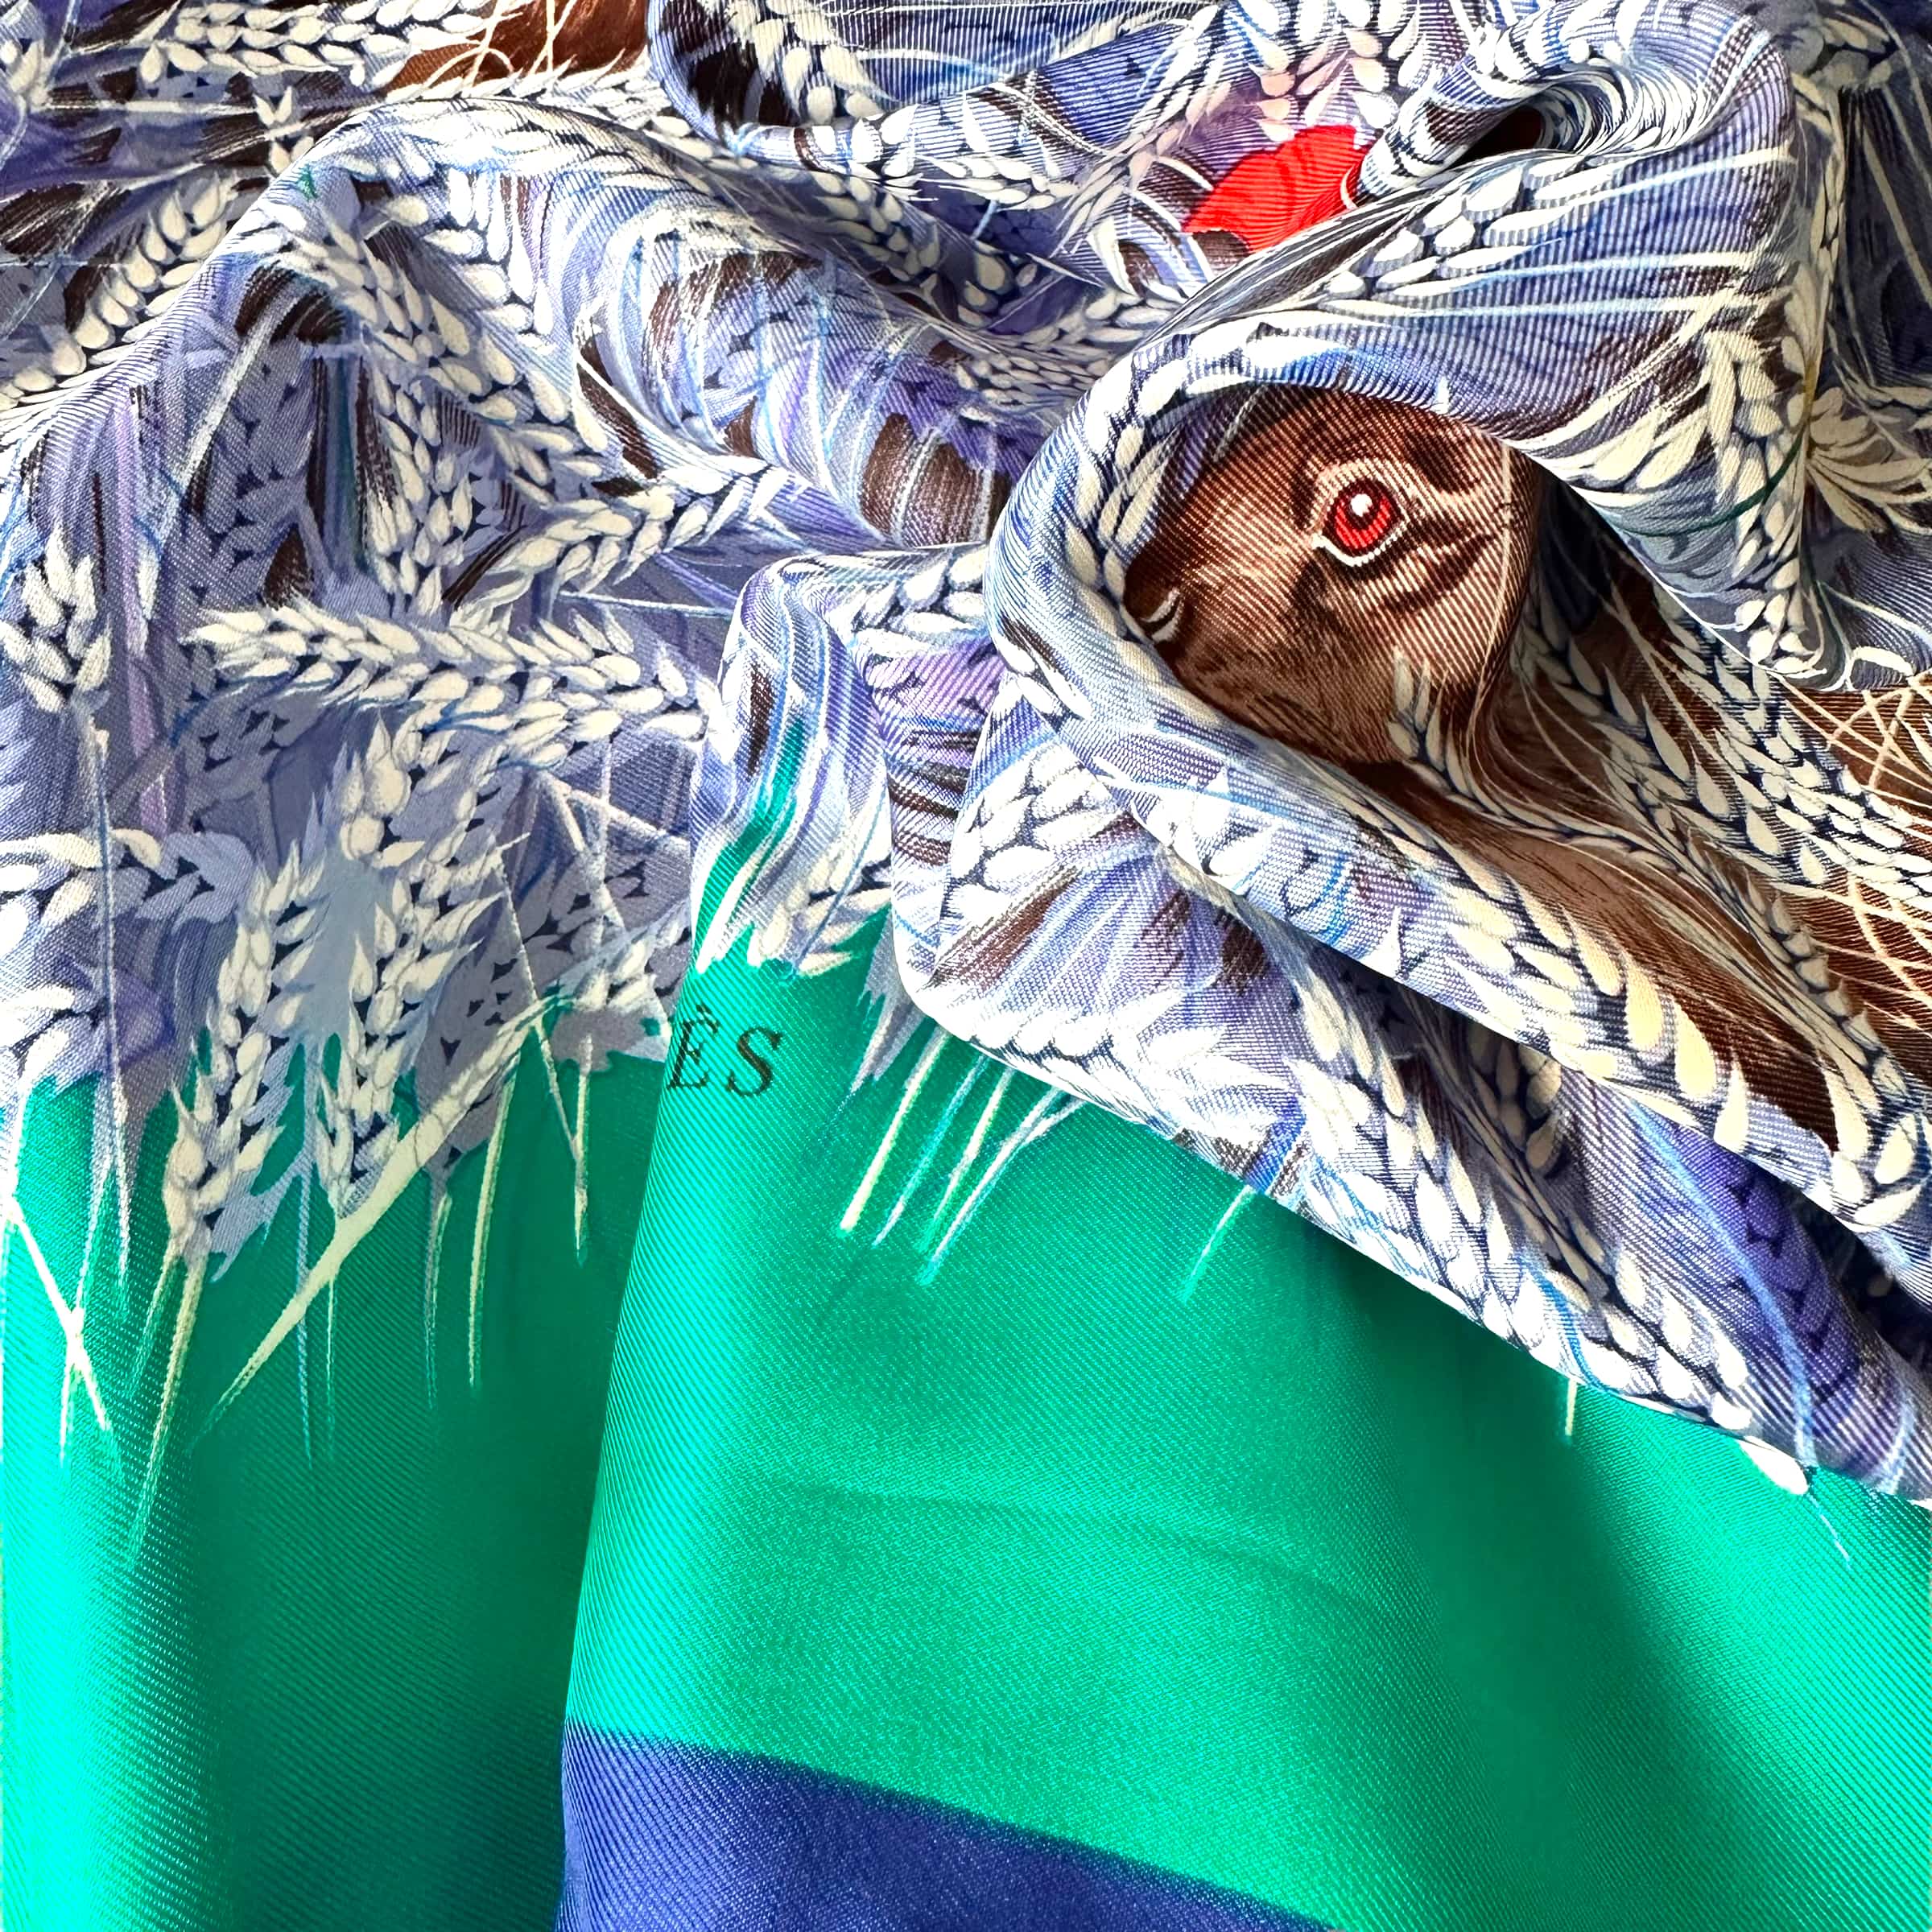 le foulard porté palette de vert et bleu on apperçoit un lapin cahe dans un plis du foulard